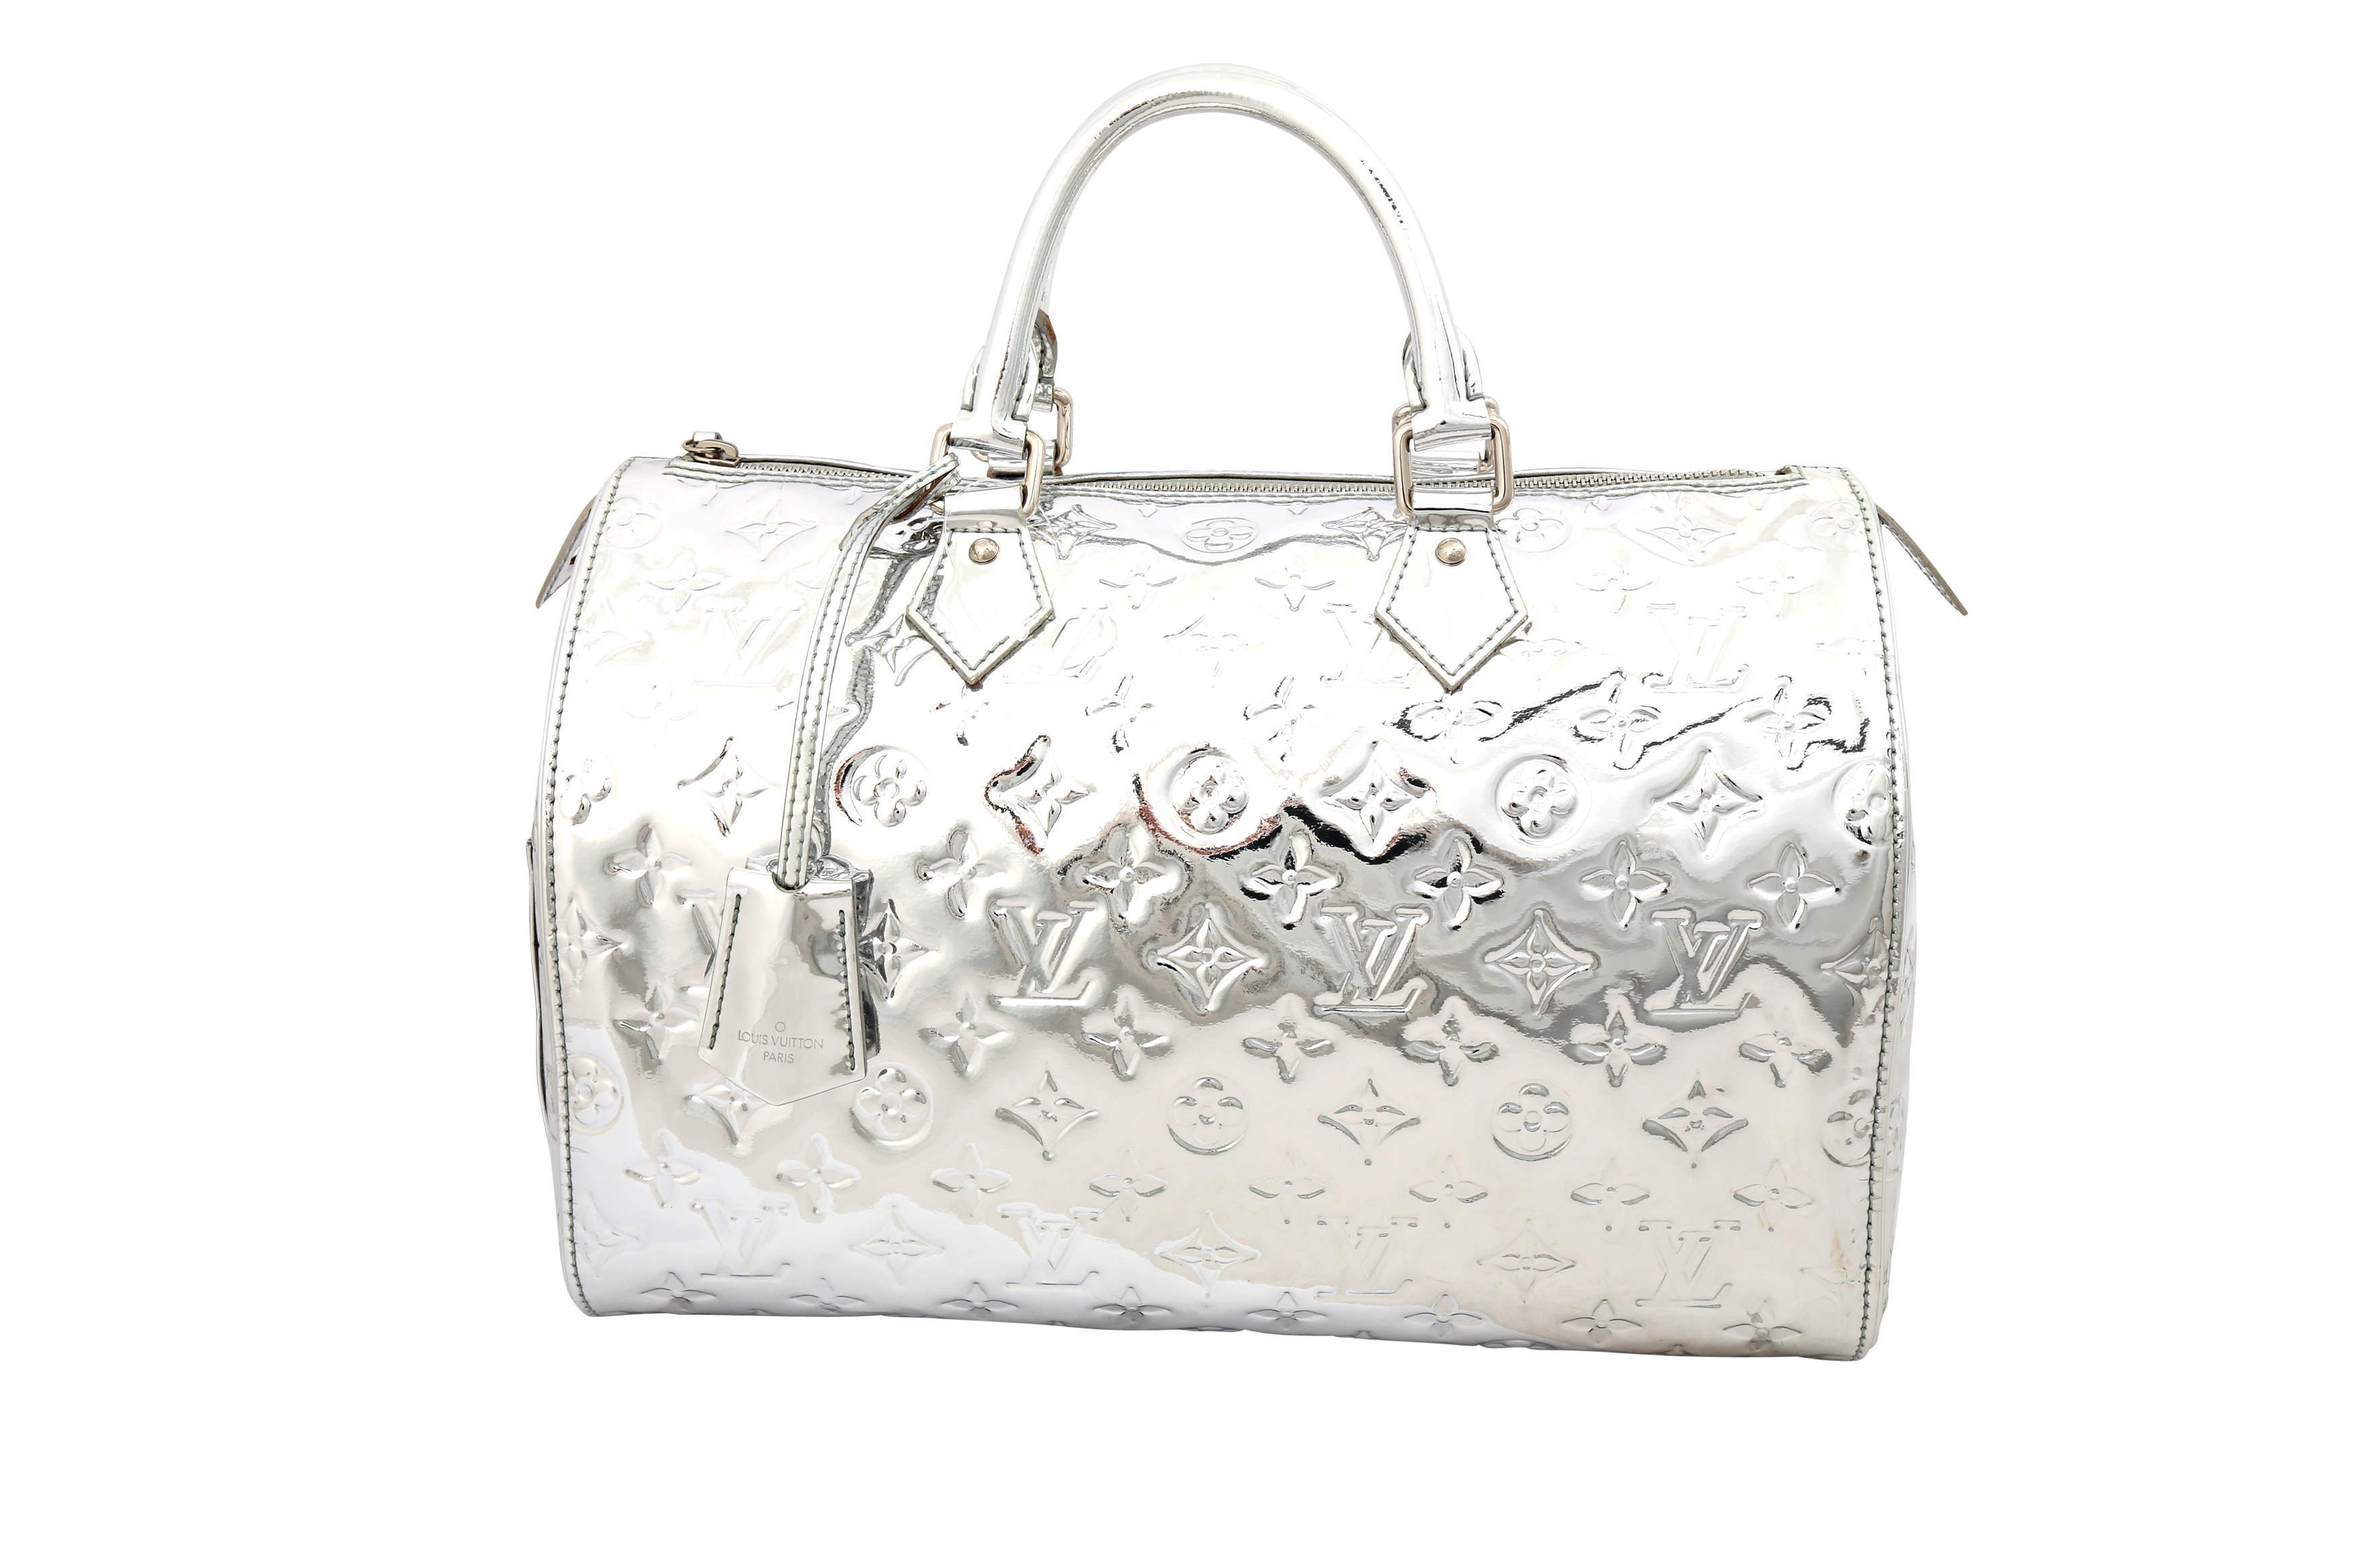 Louis Vuitton Speedy 30 Silver Monogram Miroir Handbag Purse